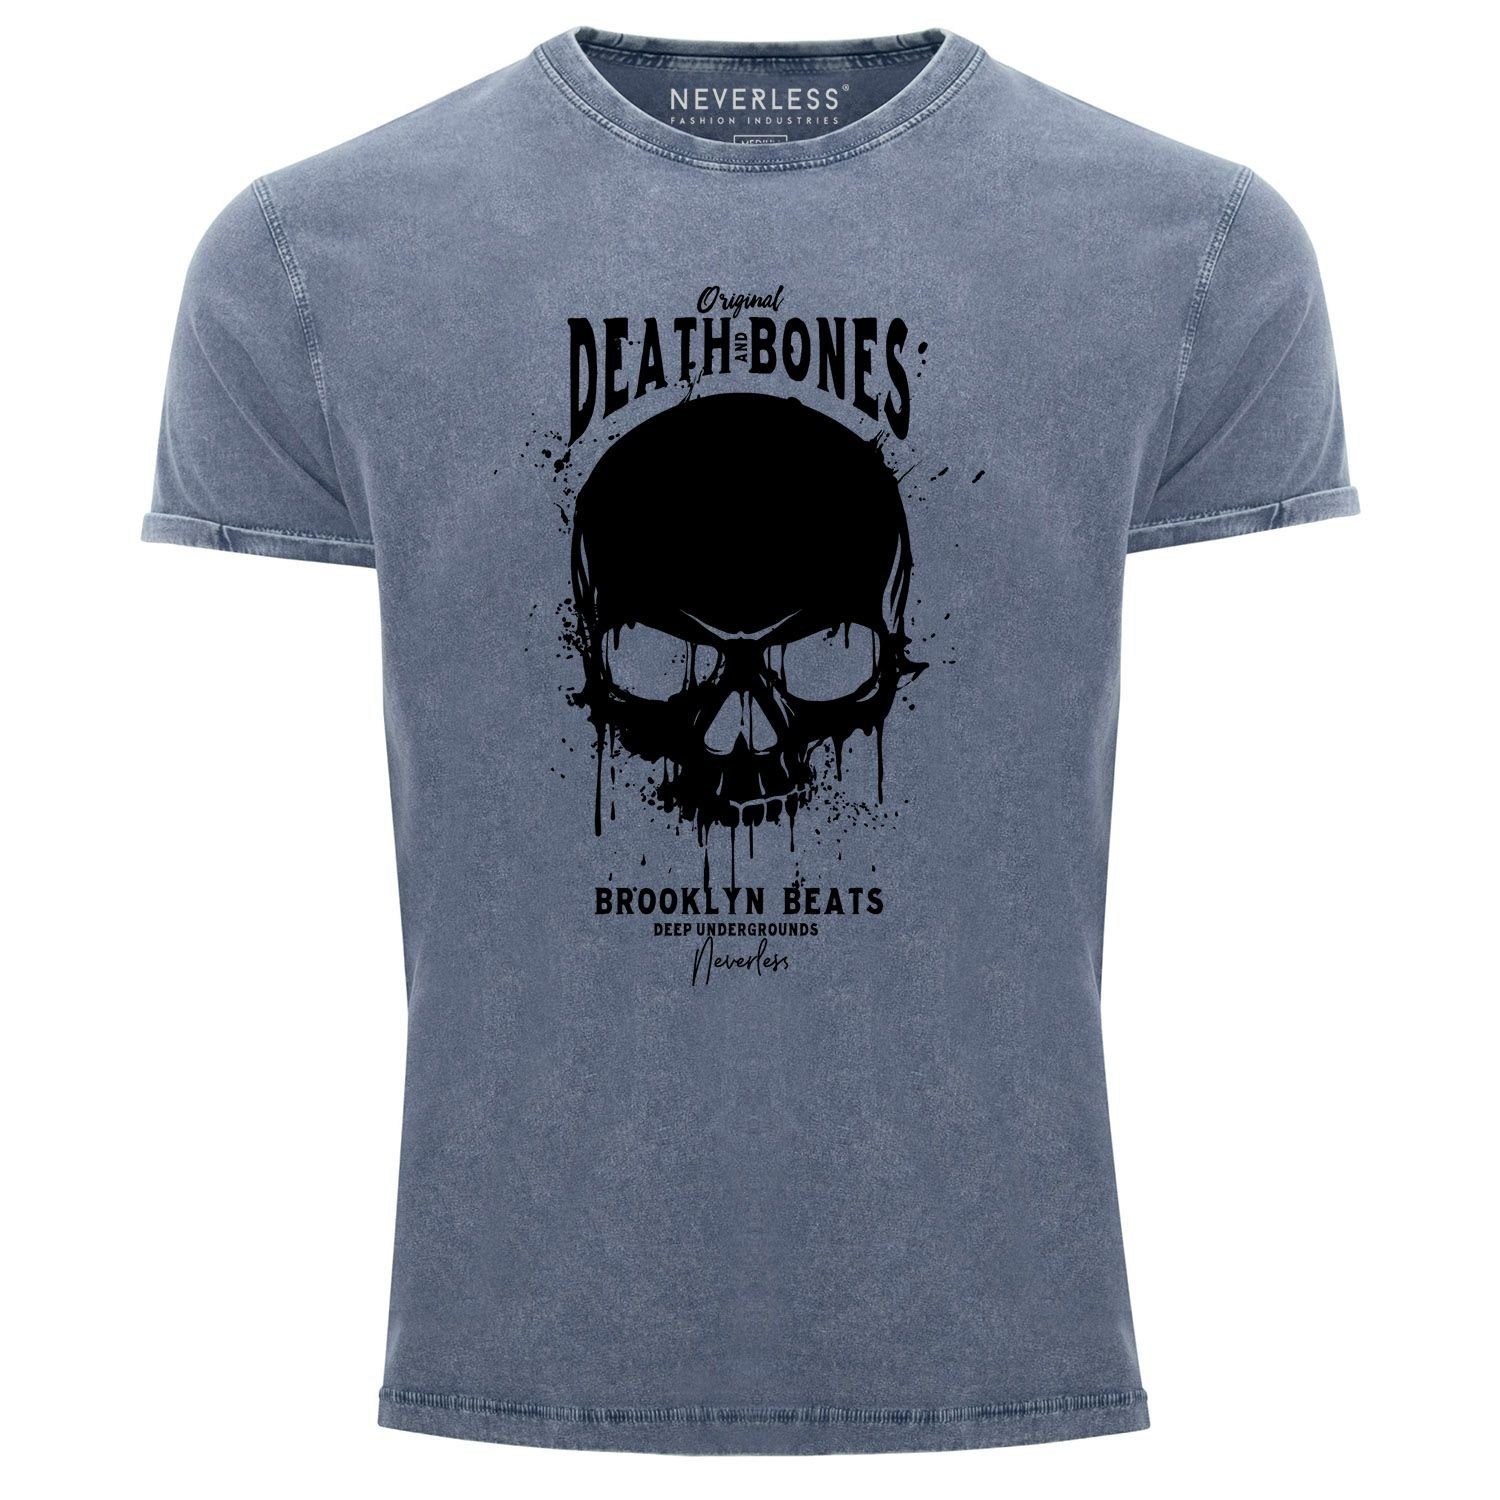 Look blau Slim Death Neverless Club mit Totenkopf Neverless® Printshirt Shirt and Print Skull T-Shirt Bones Outfit Used Herren Vintage Fit Print-Shirt